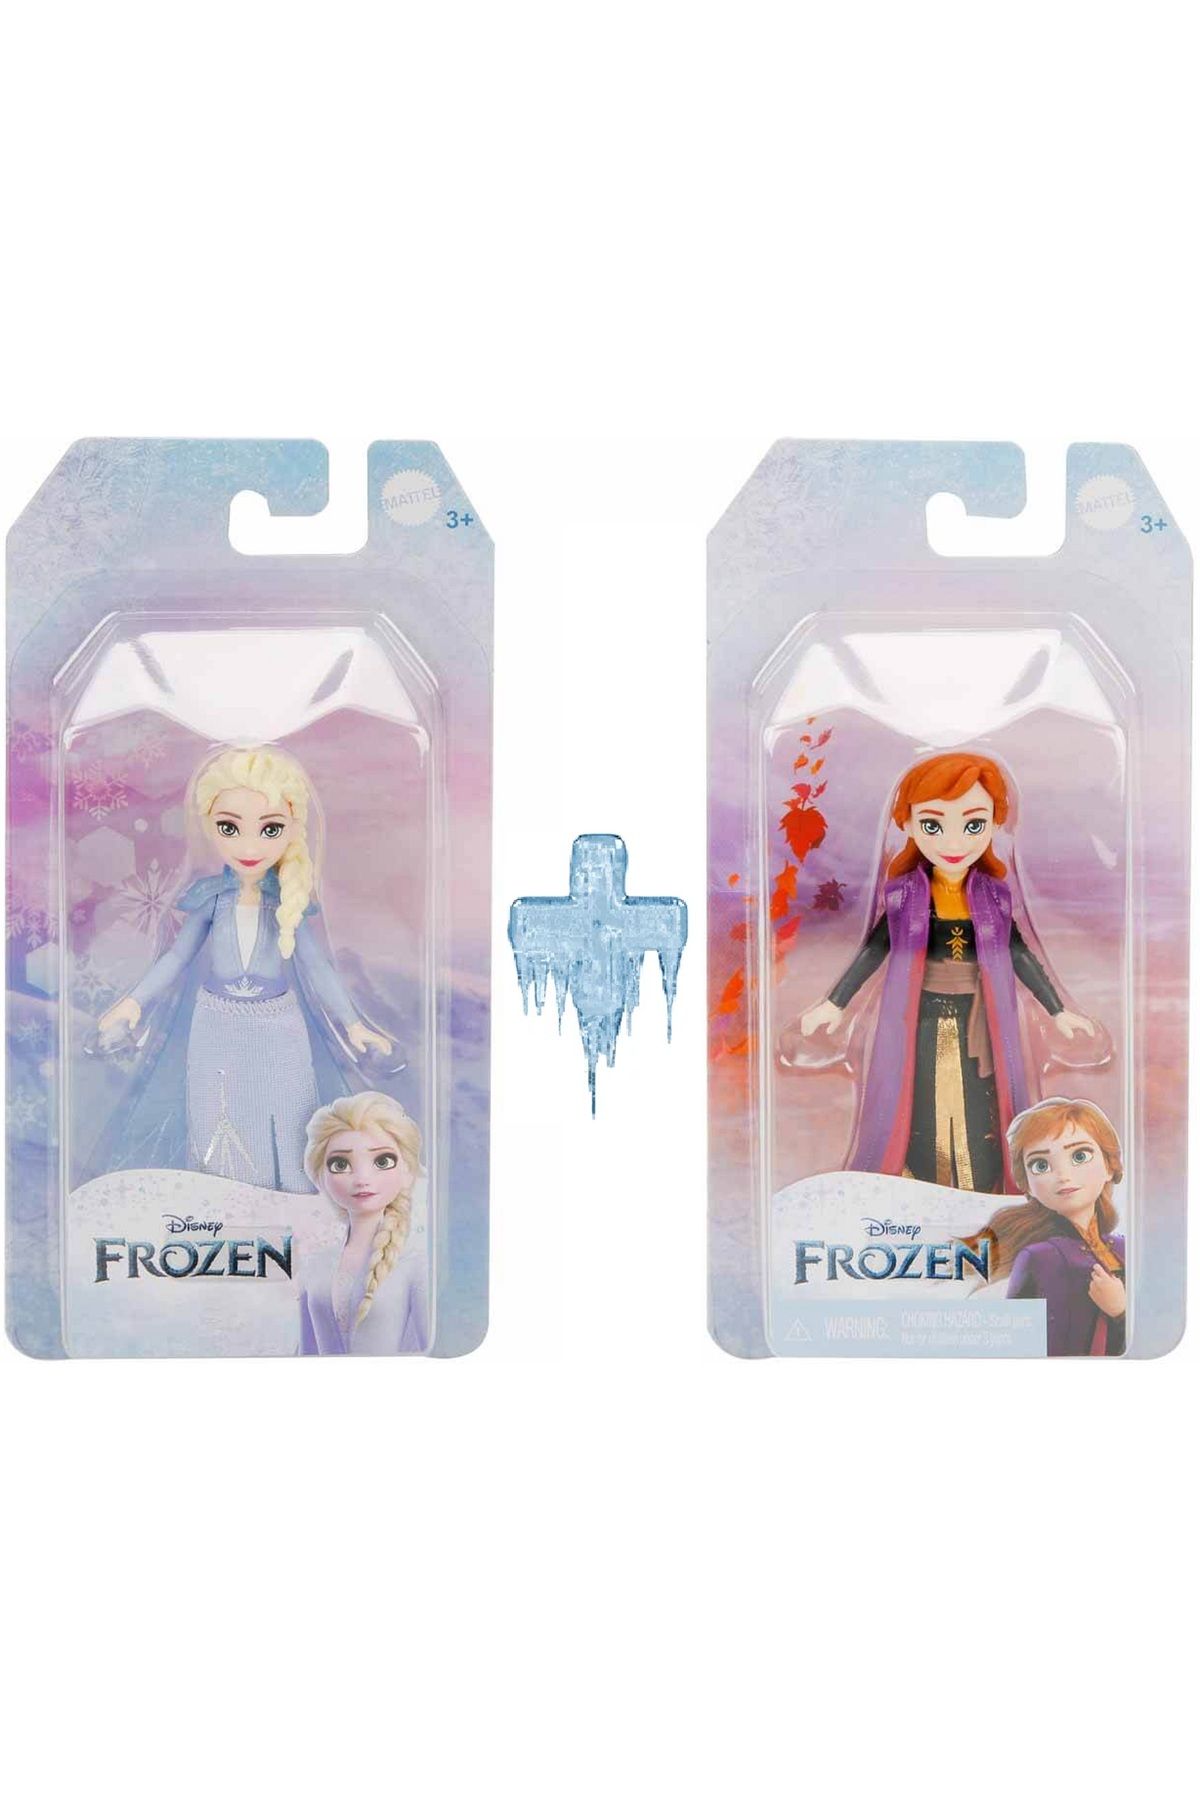 Frozen Elsa ve Anna 2'li Mini Figür Seti Hasbro Disney Frozen Karlar Ülkesi Kraliçesi Oyuncak Bebek Set 9cm